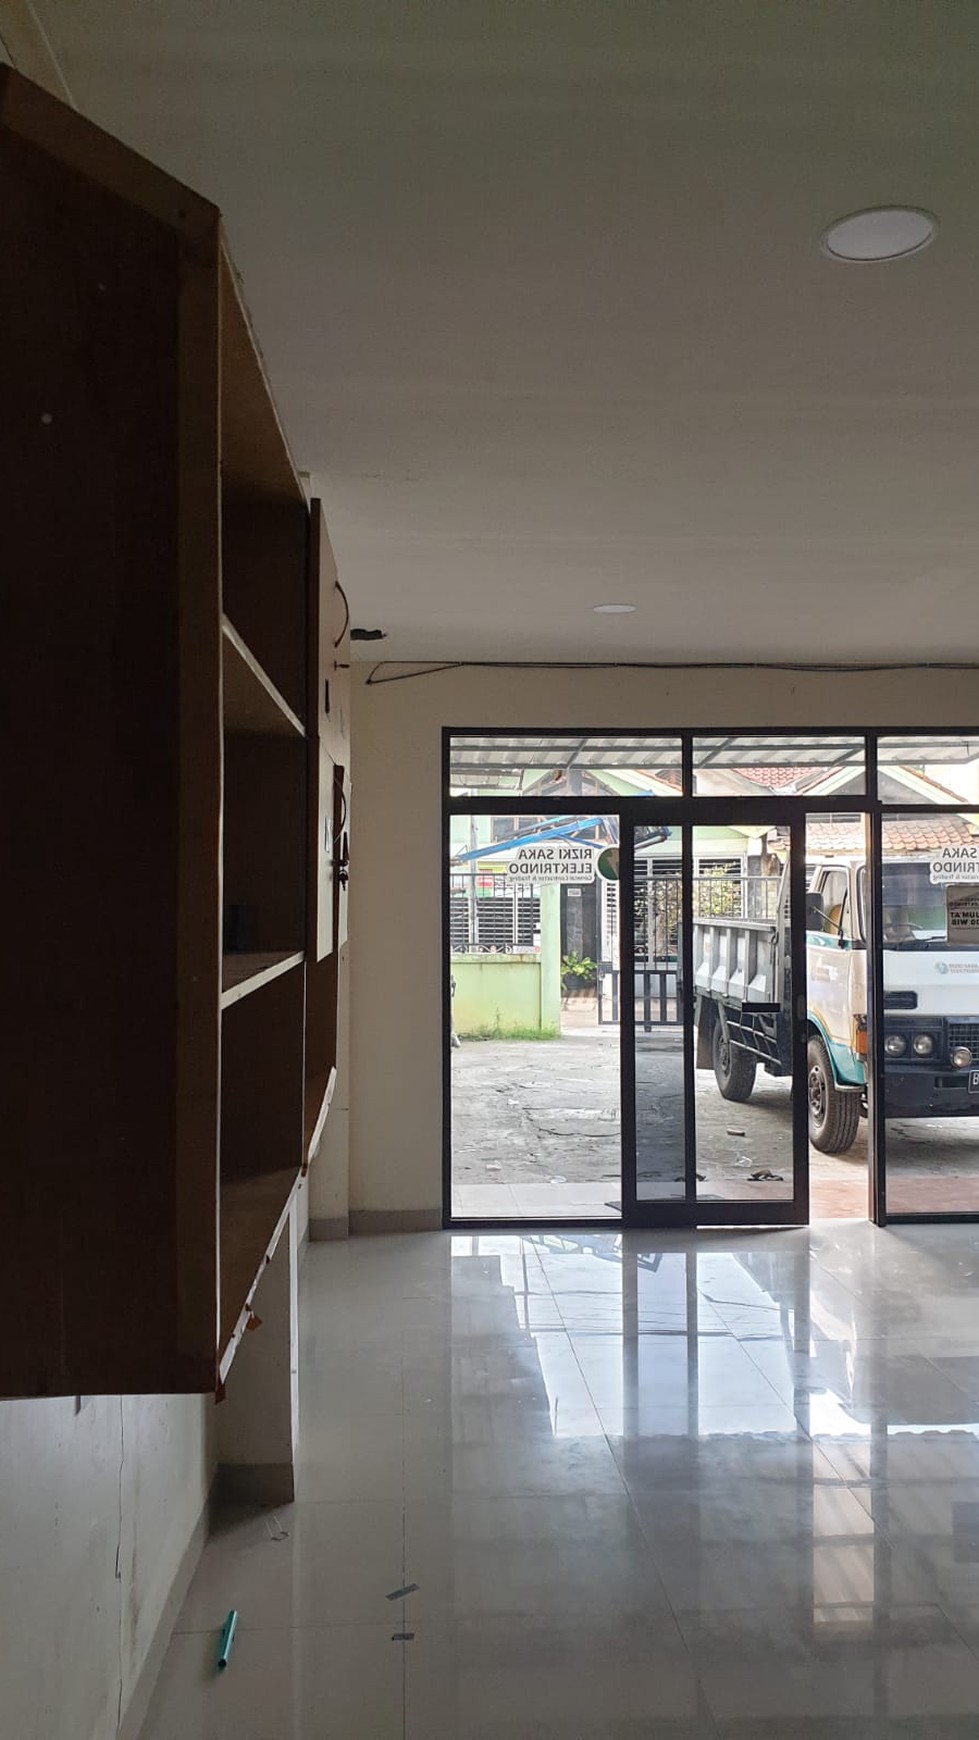 Dijual Ruang Usaha Lokasi Strategis dan Kawasan Ramai @Paku Jaya, Serpong Utara